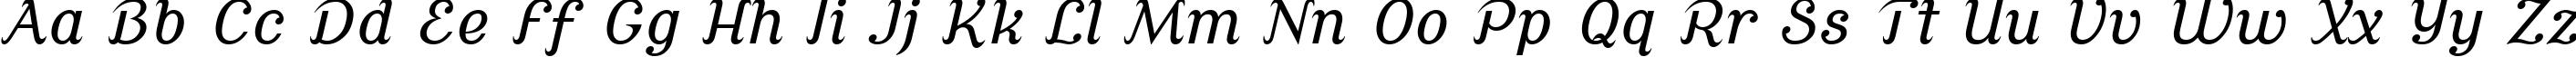 Пример написания английского алфавита шрифтом Cursive Serif